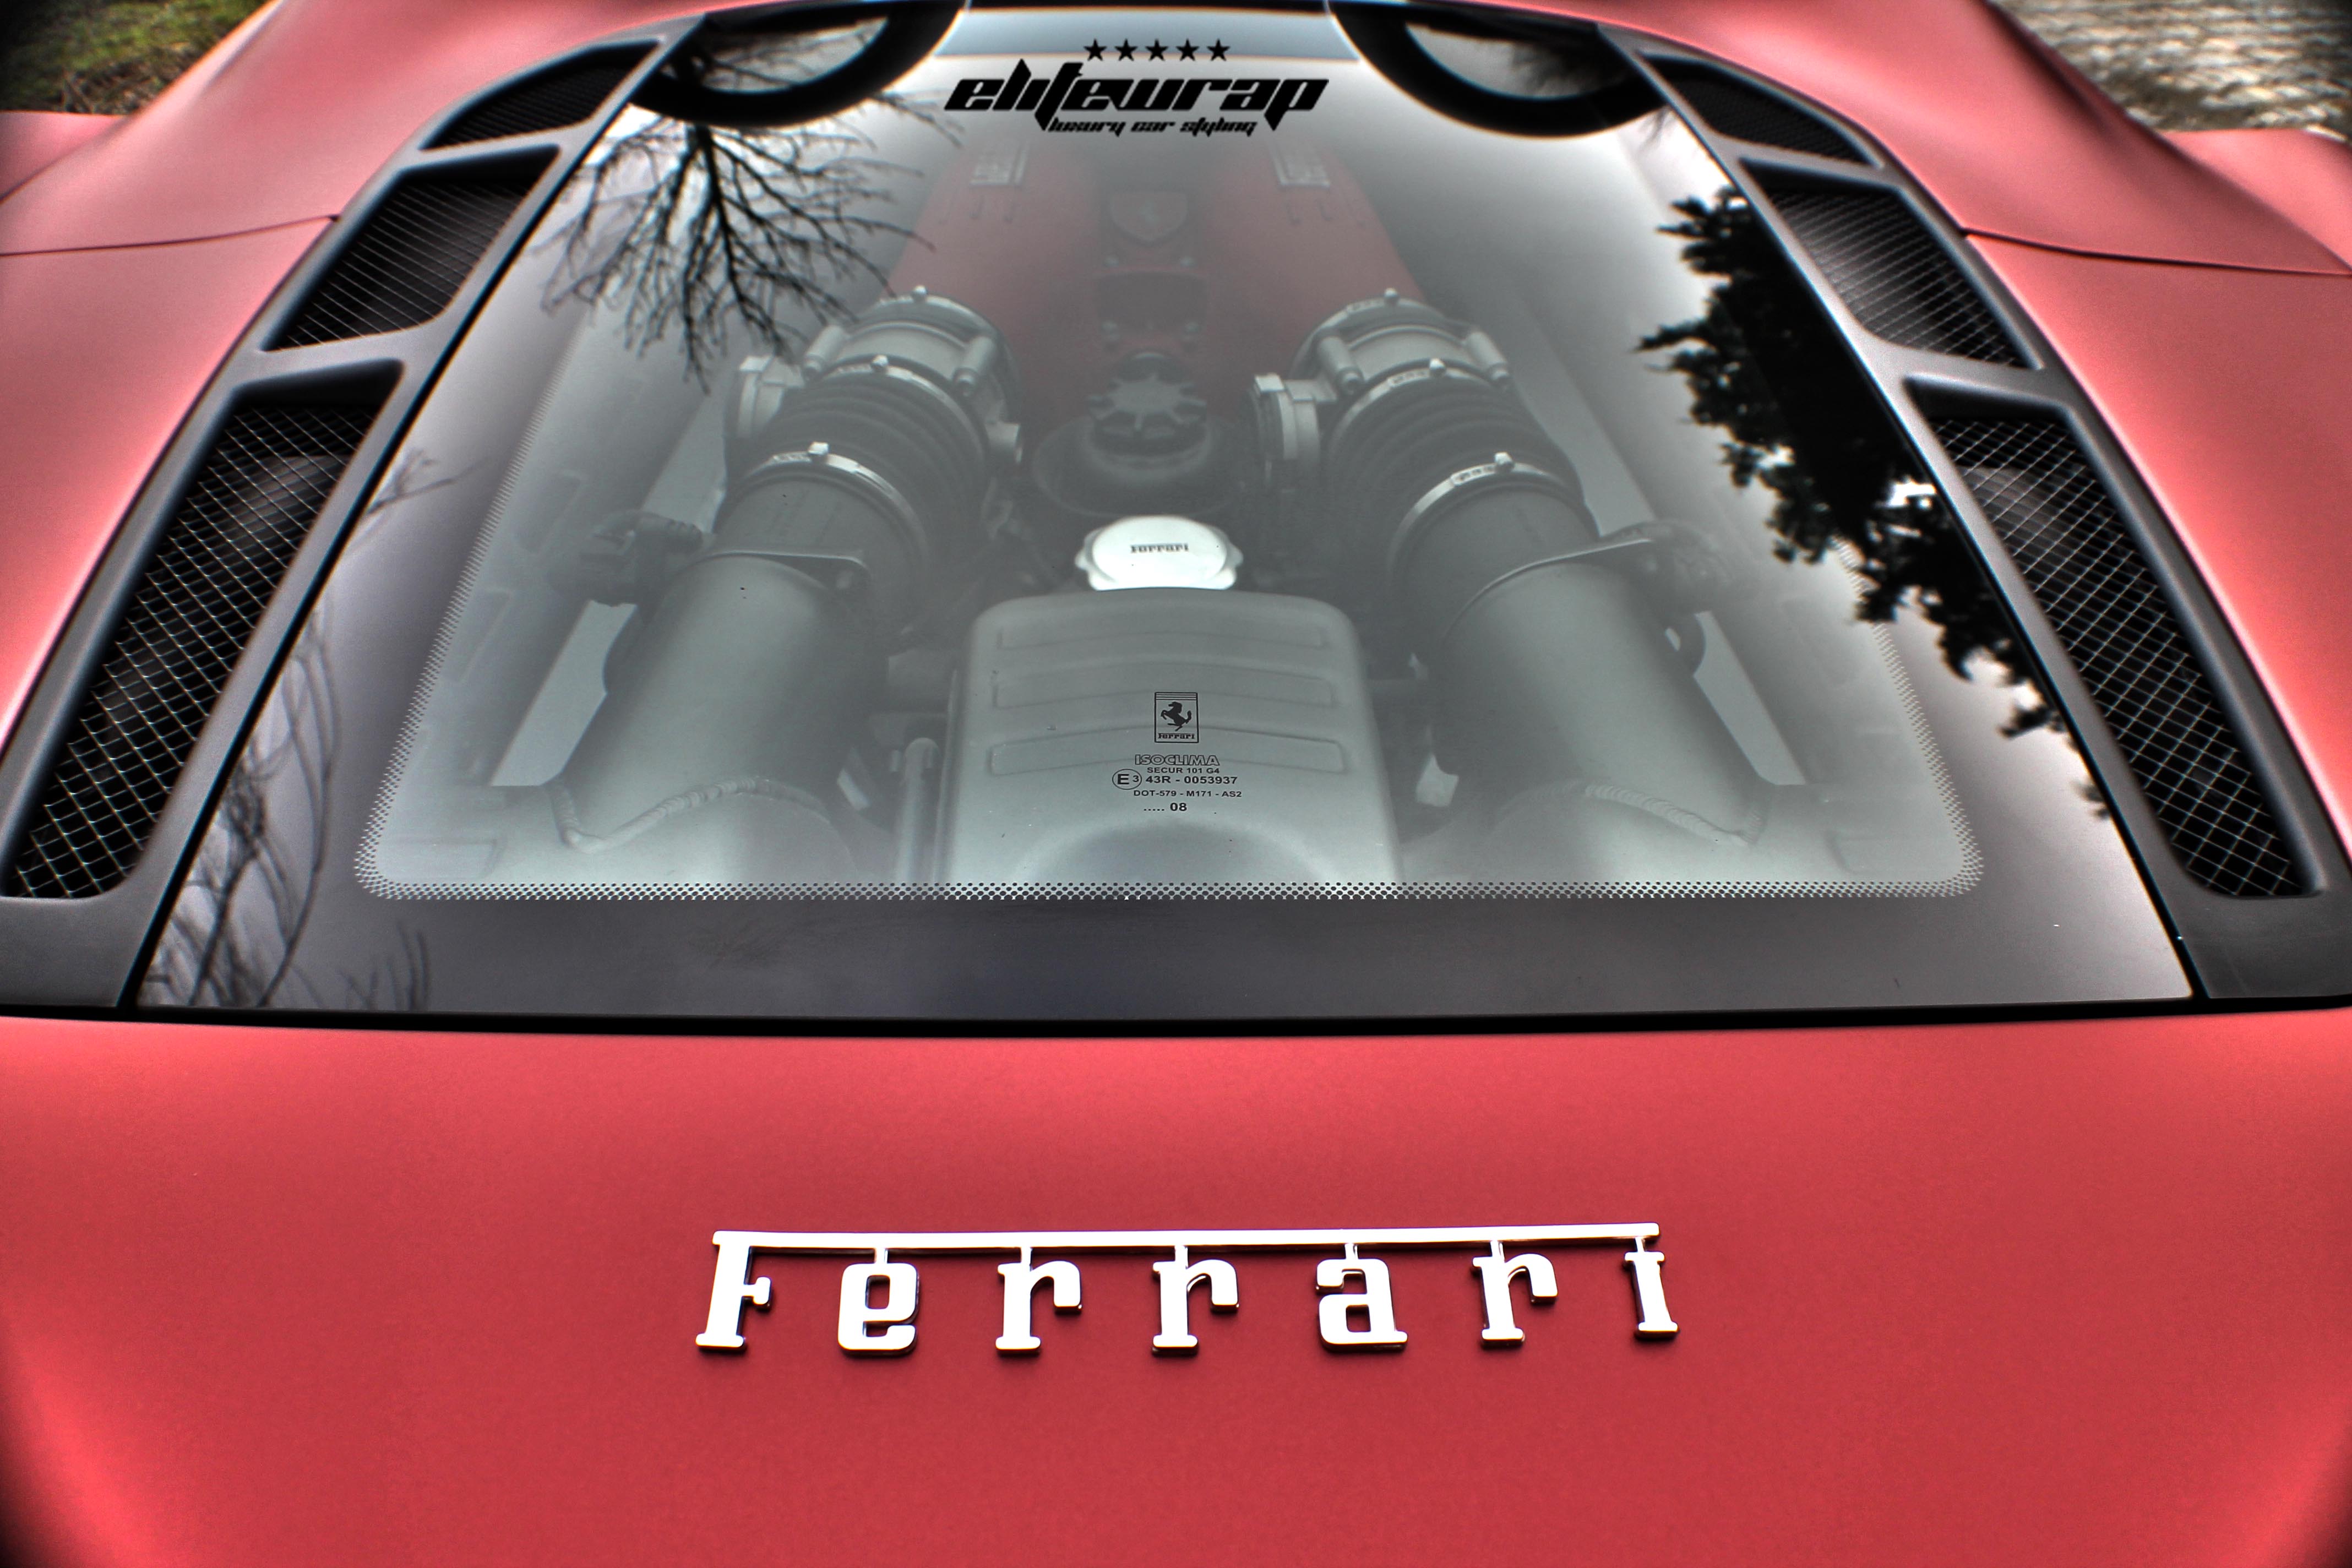 Elite Wrap geeft Ferrari F430 unieke wrap